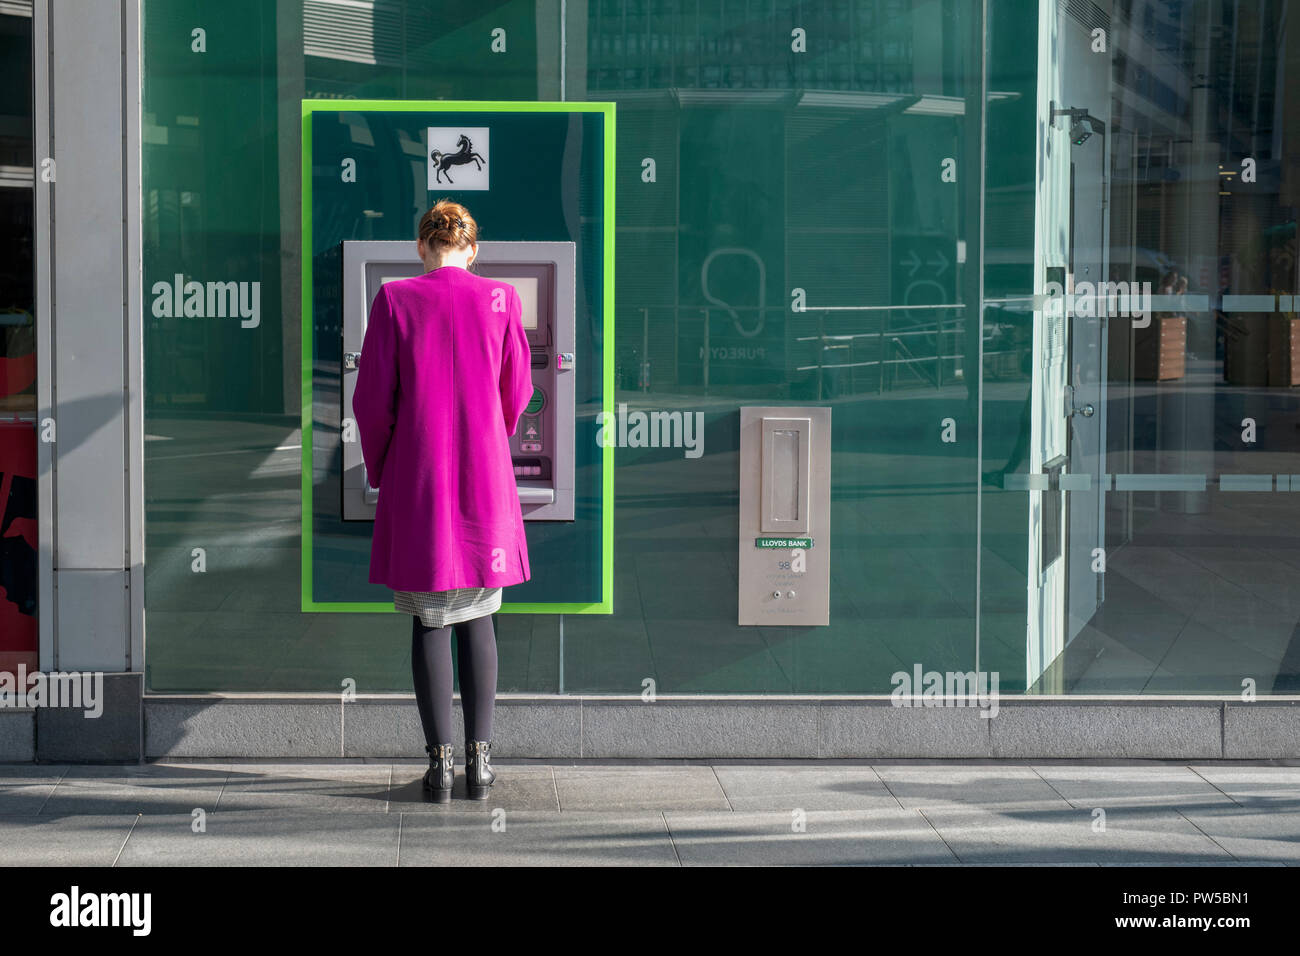 Woman wearing a pink coat at a Lloyds Bank cash machine. London, UK Stock Photo